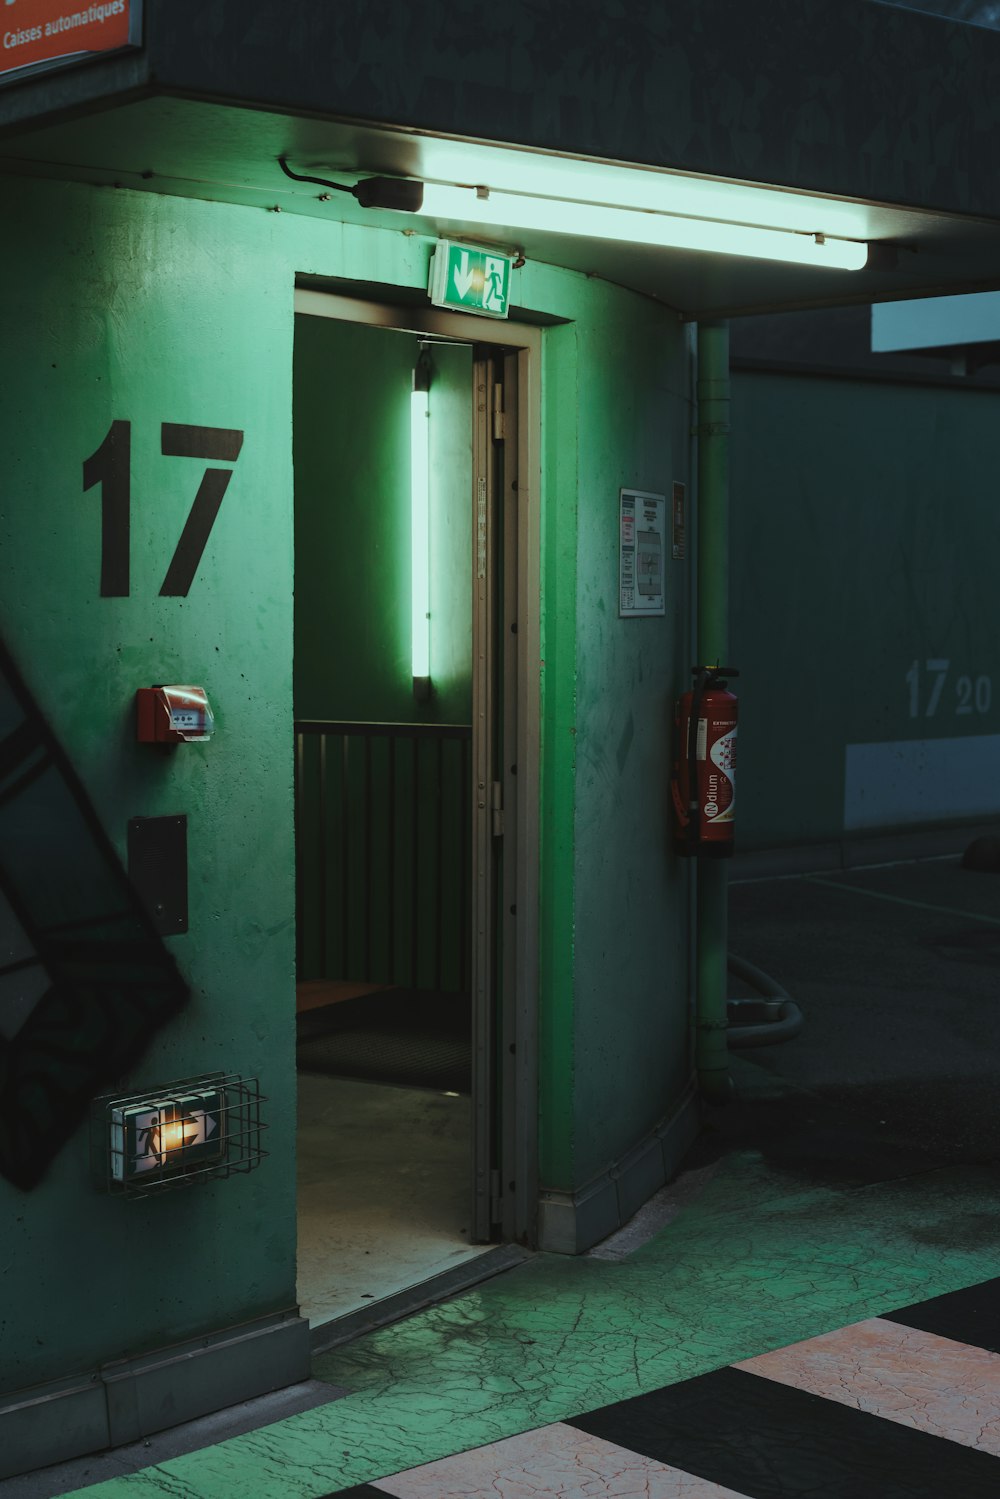 green metal door with number 2